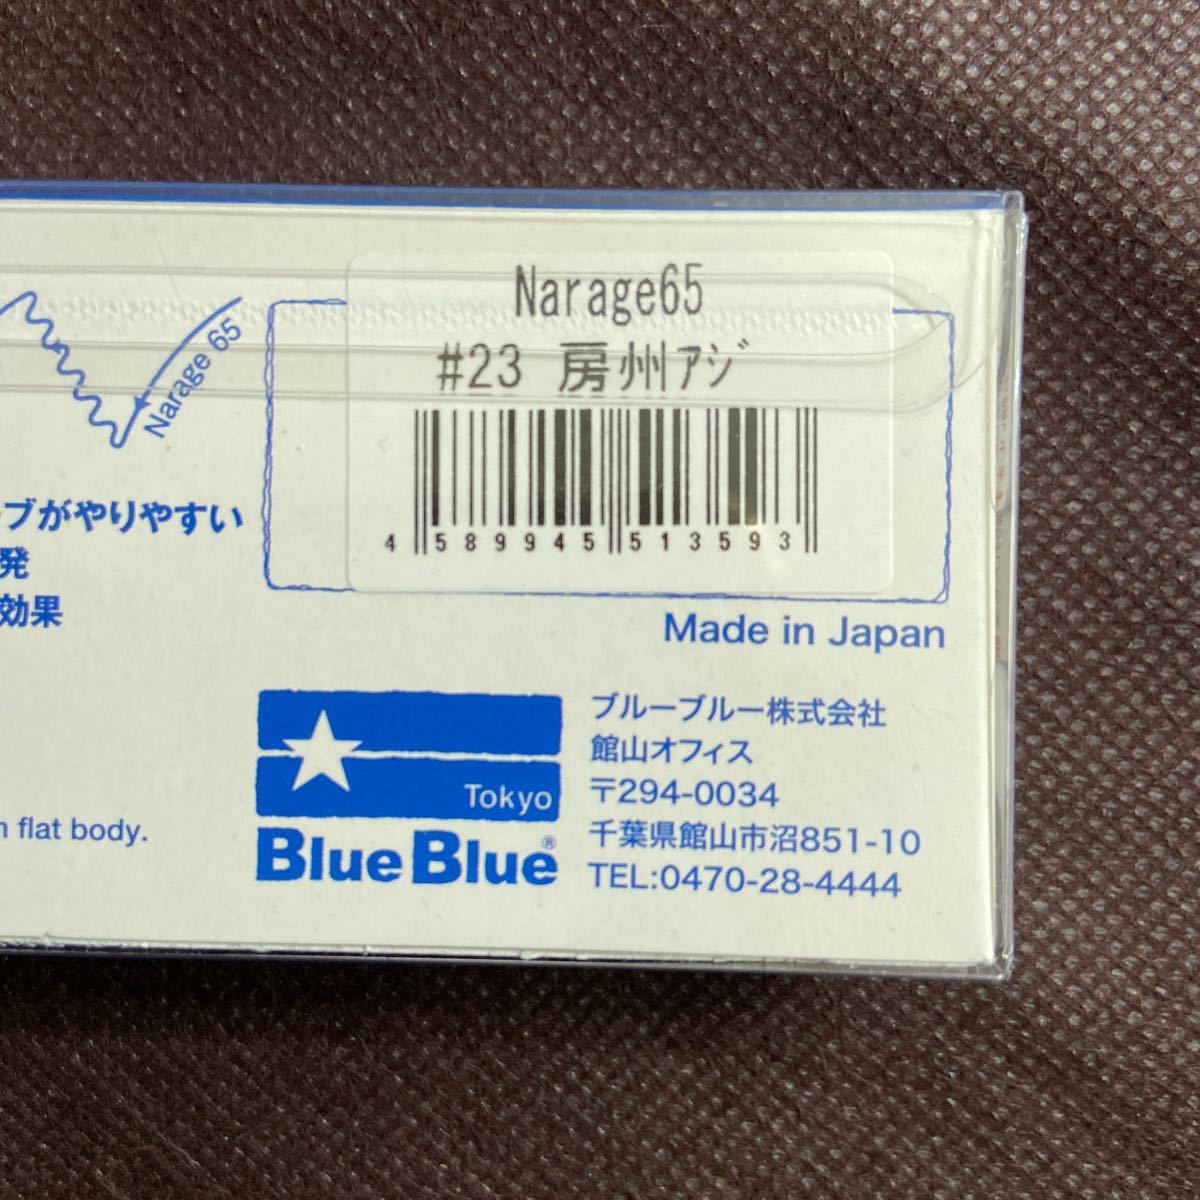 ブルーブルー Narage 65 BlueBlue ナレージ 65 応募券付 ③の画像2